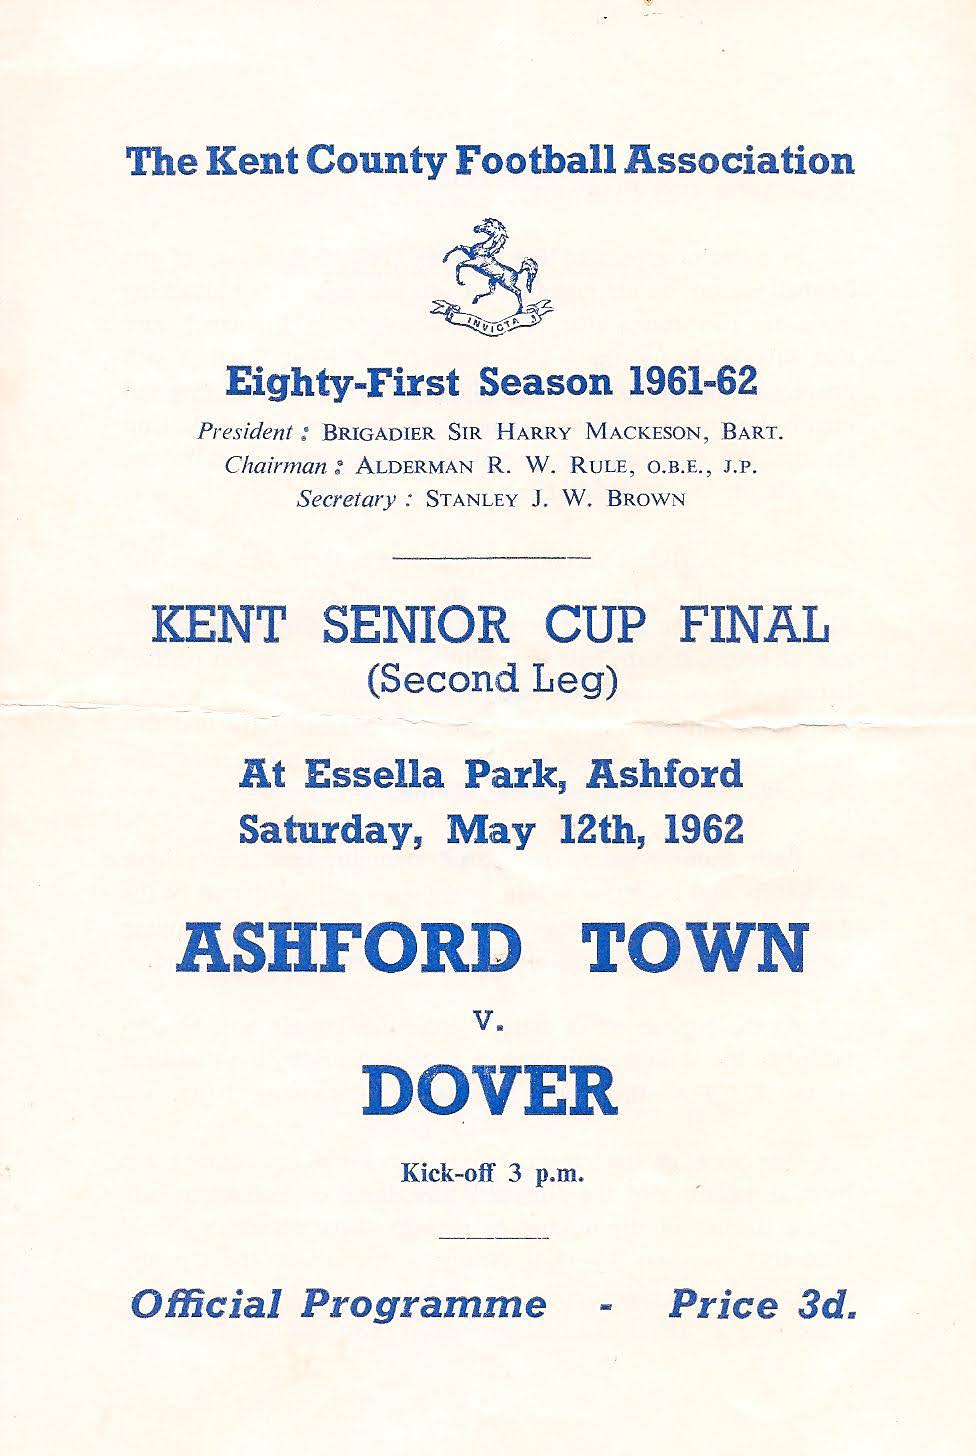 1961 KSC Final Programme - 2nd Leg